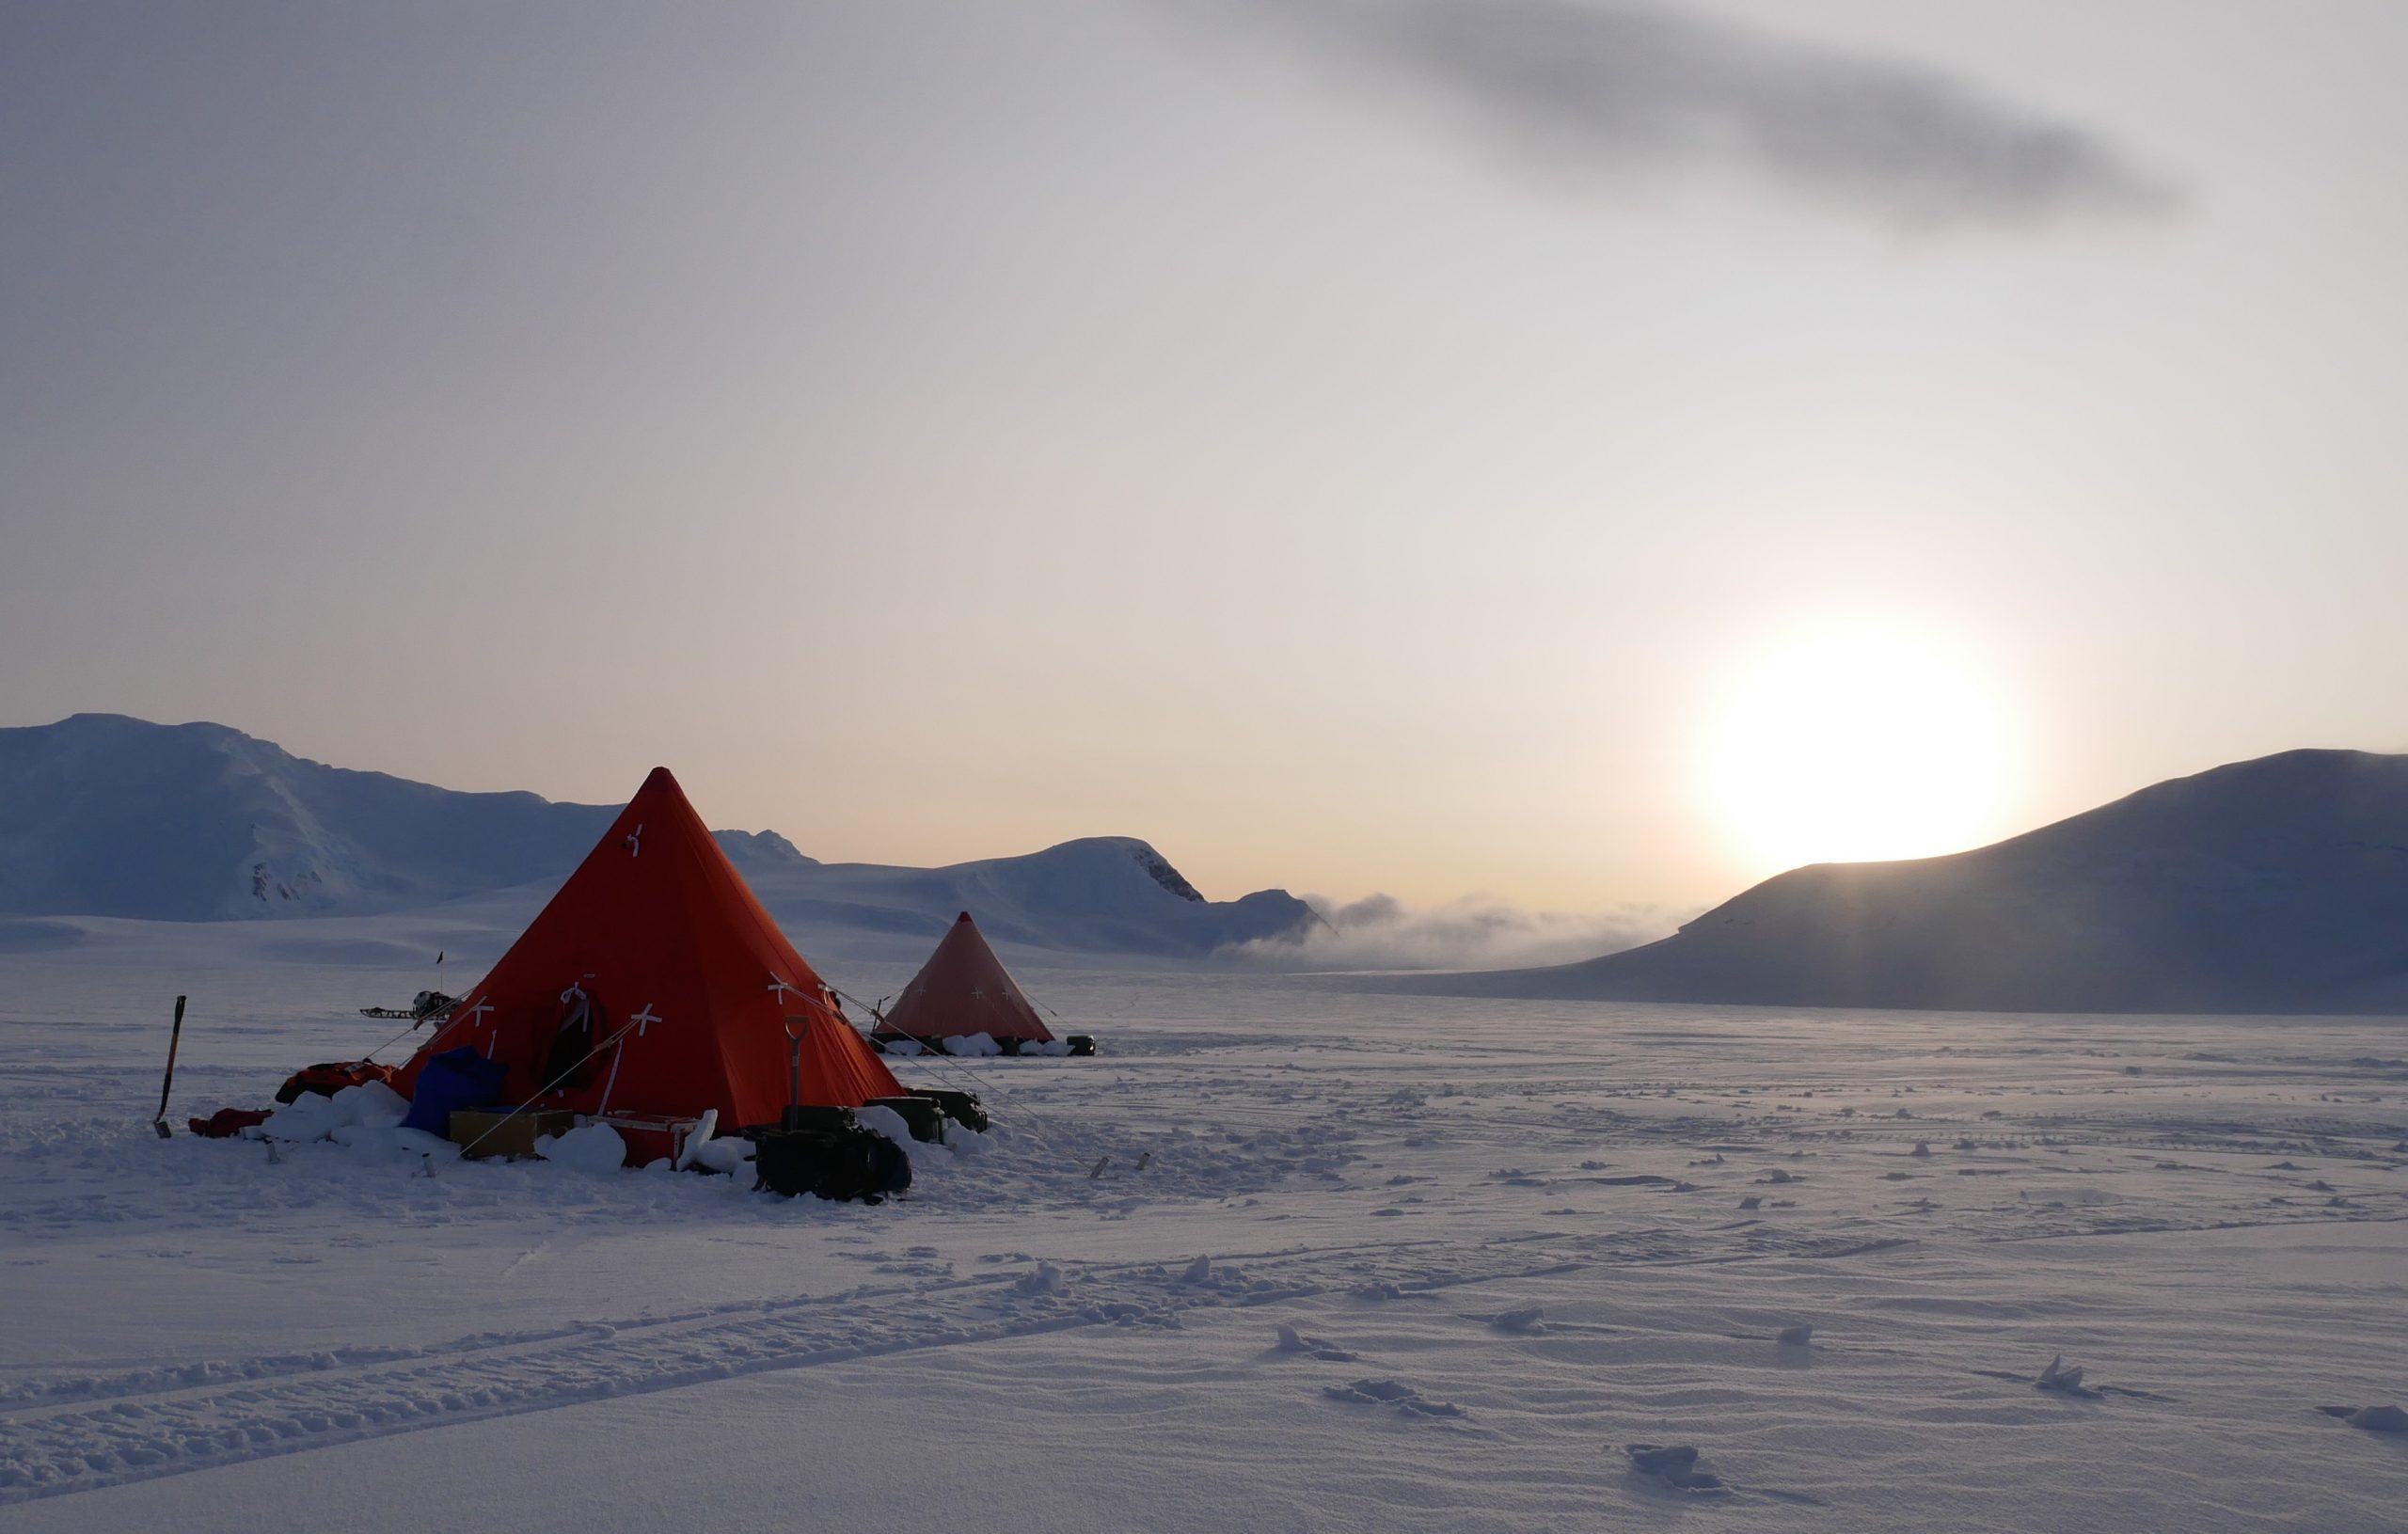 Field site visit in Antarctica. Credit: John Law